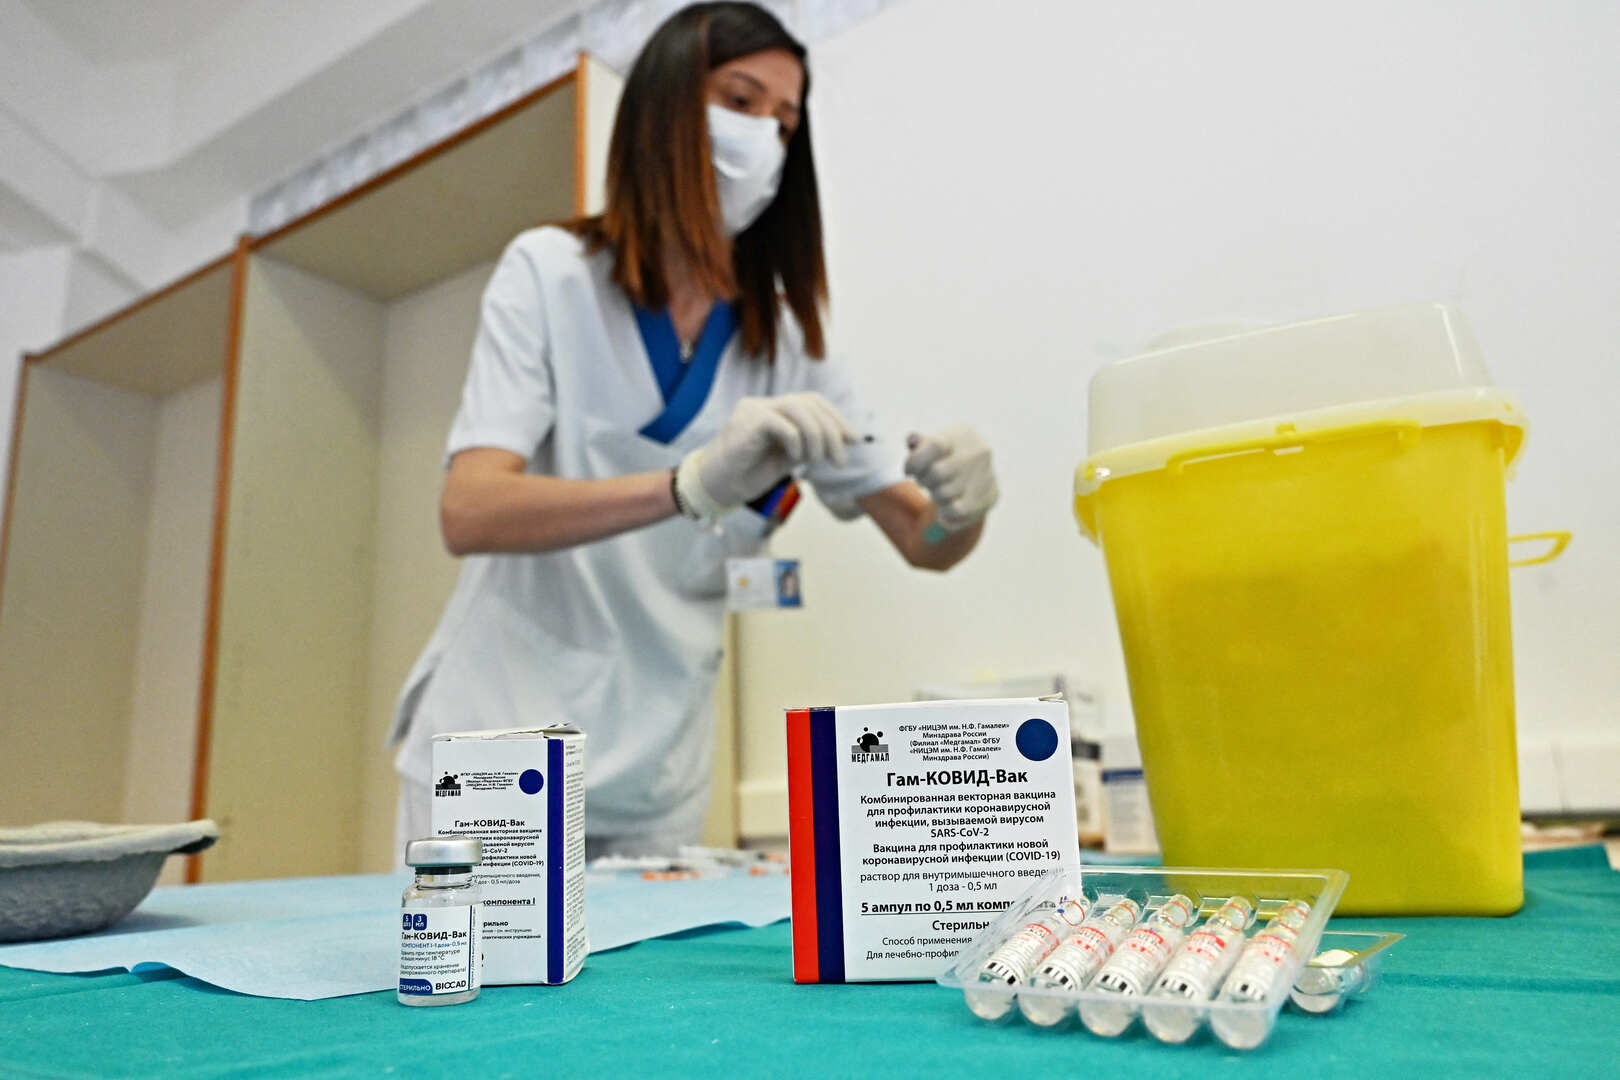 سان مارينو تستعد لفتح أبوابها للسياح الراغبين بالتطعيم بلقاح 